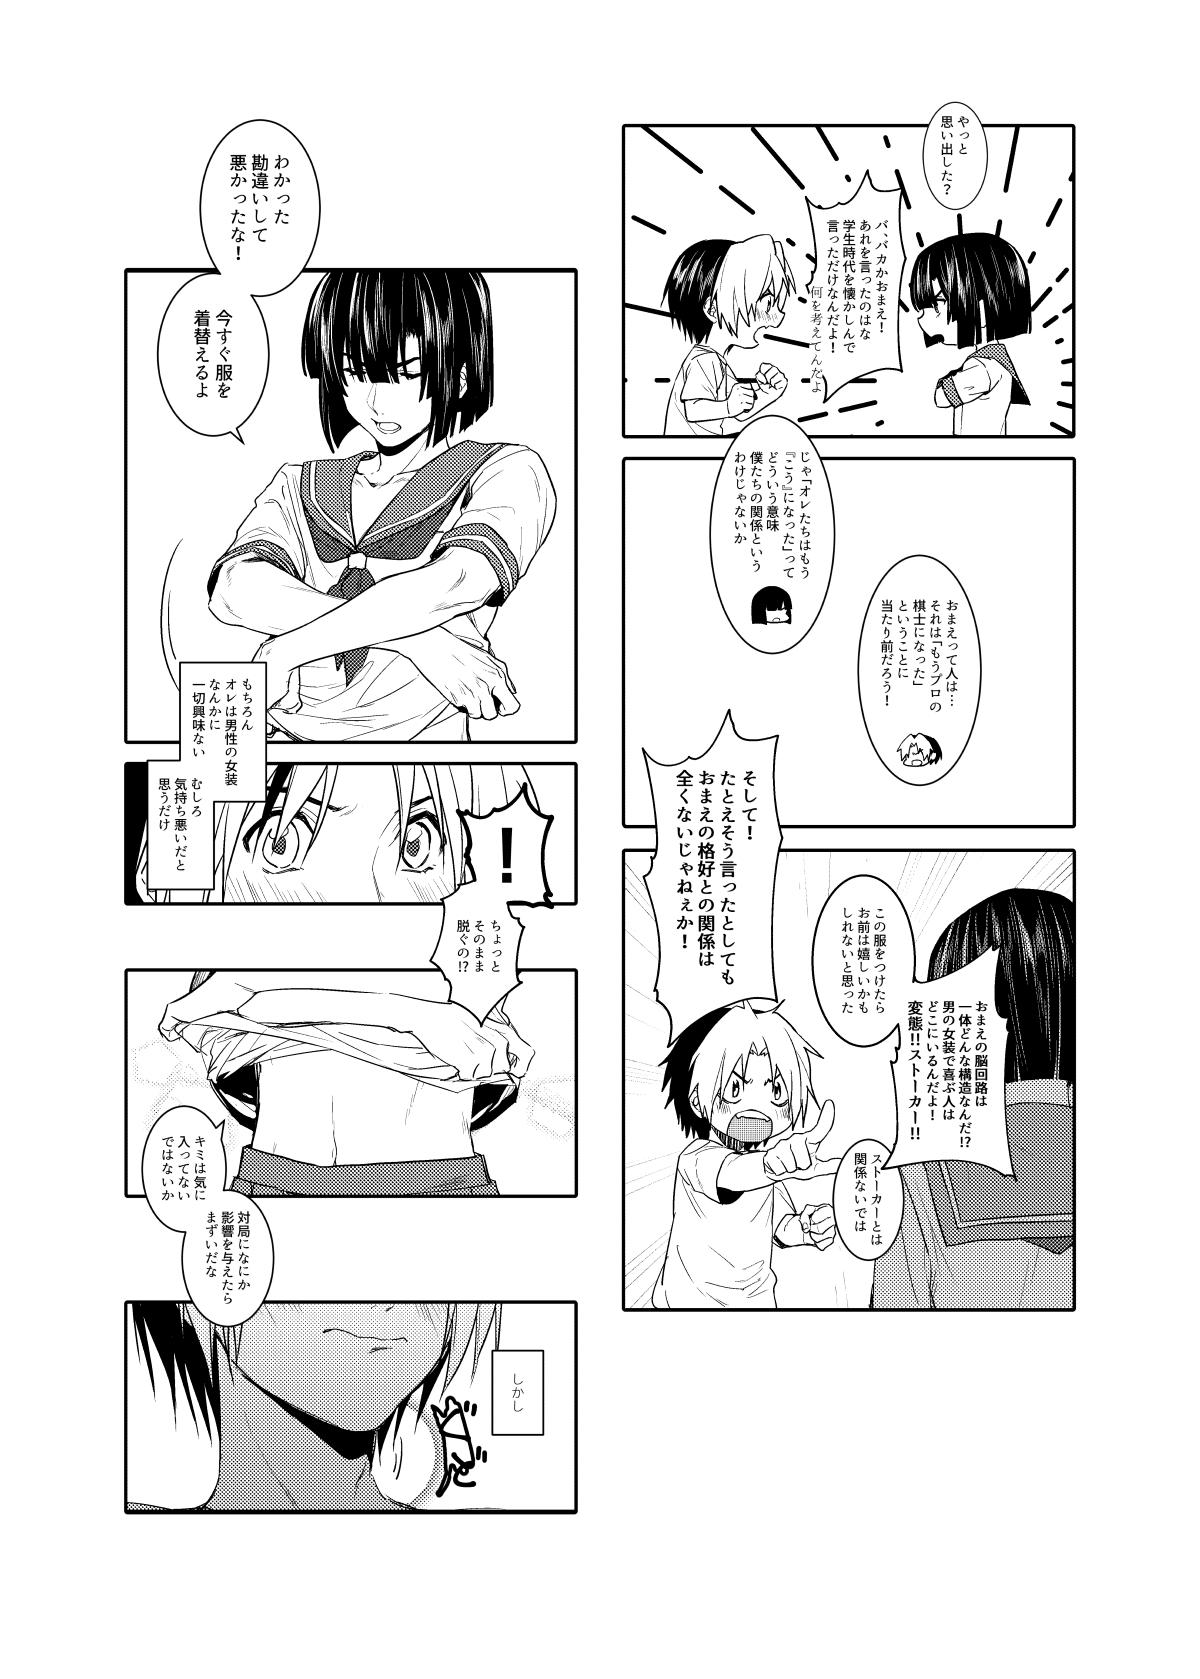 Leaked Saikyou ♂ Kanojo - Hikaru no go Chunky - Page 4